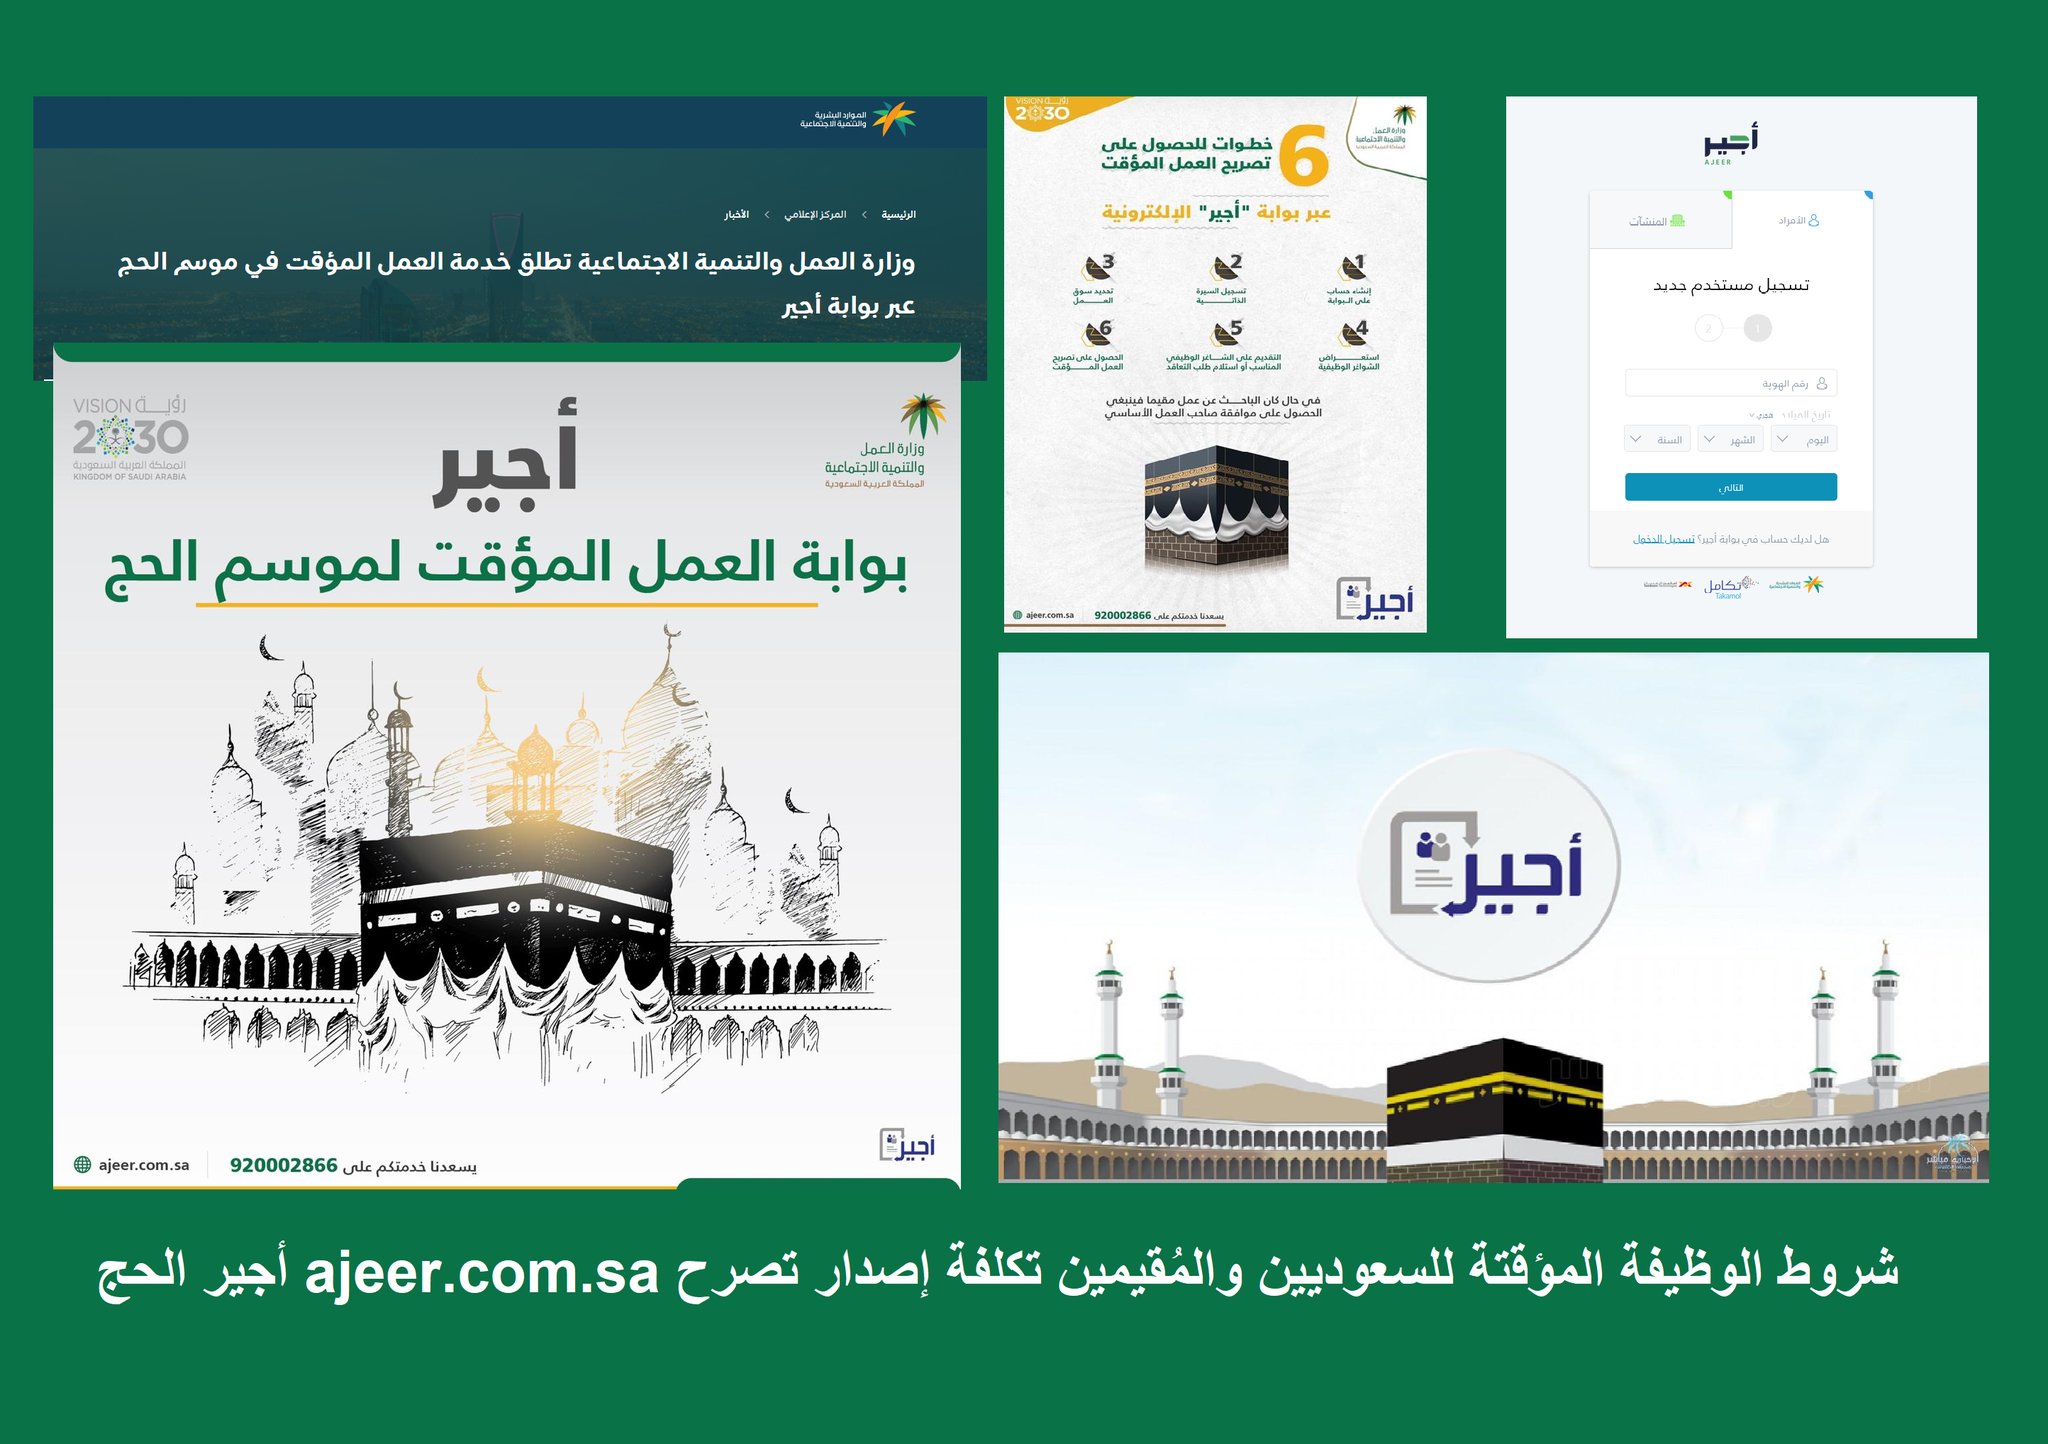 شروط وظيفة الحج المؤقتة ajeer.com.sa على بوابة أجير للمواطن والمُقيم وإصدار تصرح العمل